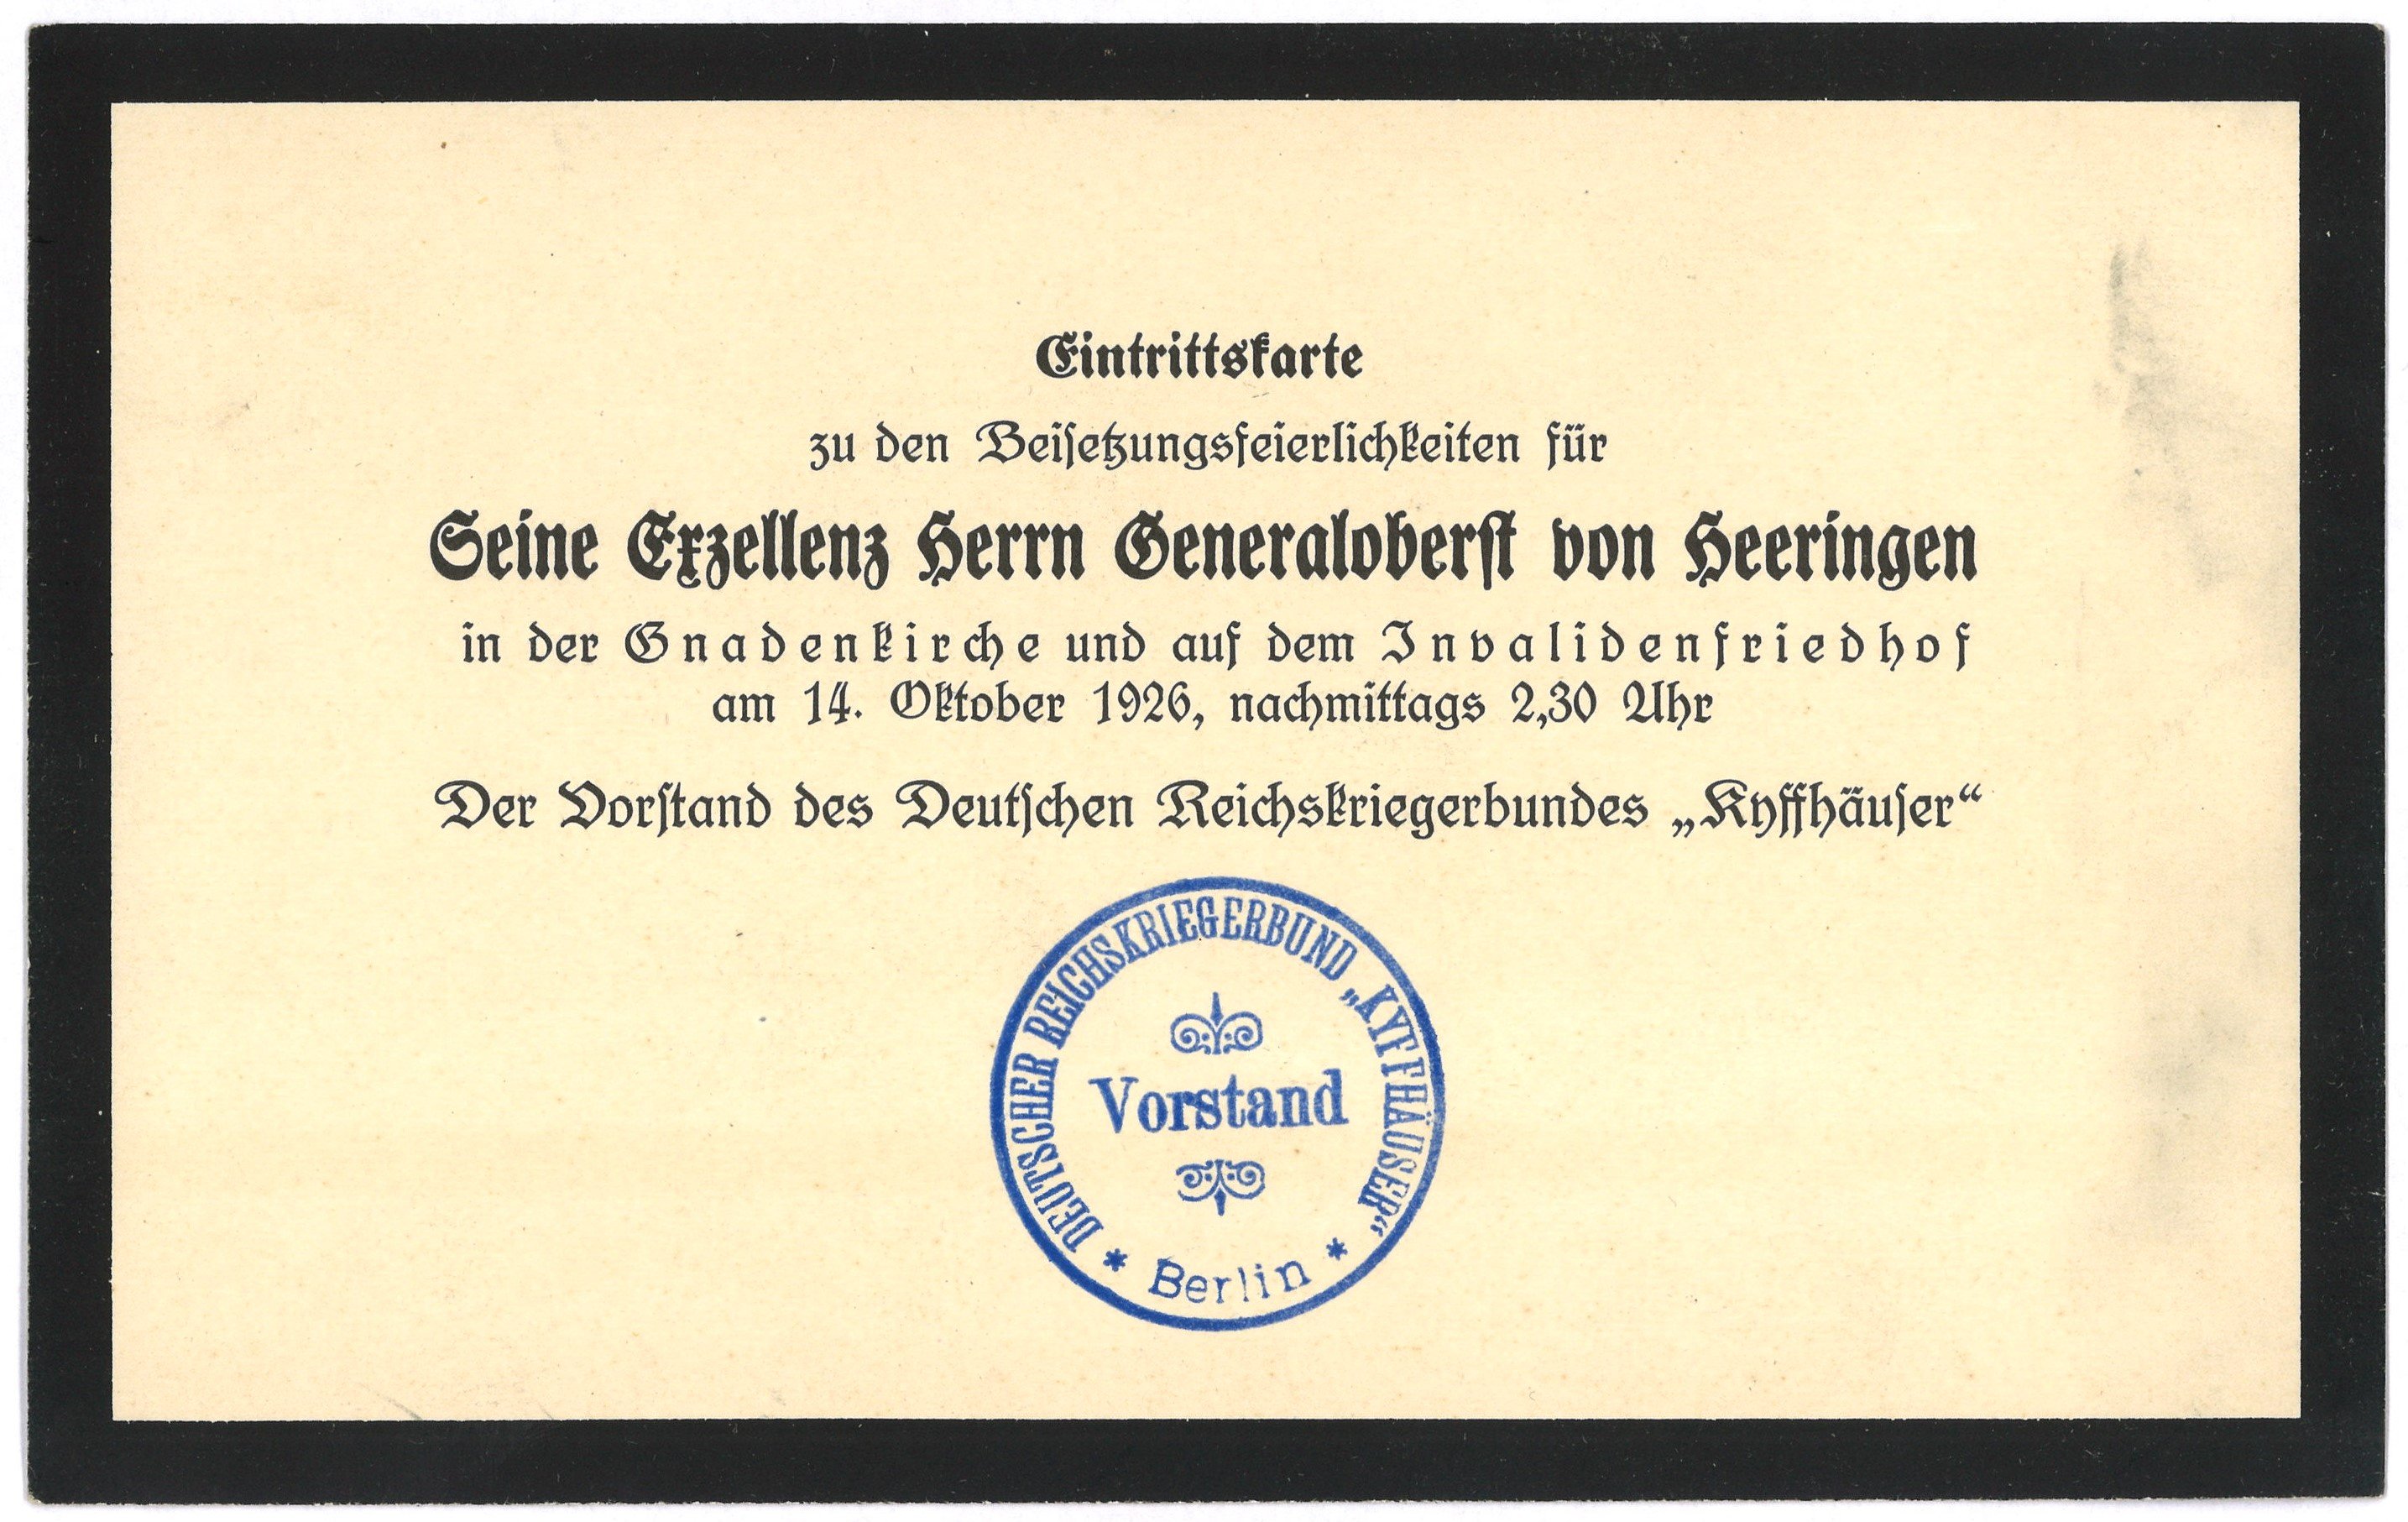 Eintrittskarte zu den Beisetzungsfeierlichkeiten für Generaloberst Josias von Heeringen in Berlin 1926 (Landesgeschichtliche Vereinigung für die Mark Brandenburg e.V., Archiv CC BY)